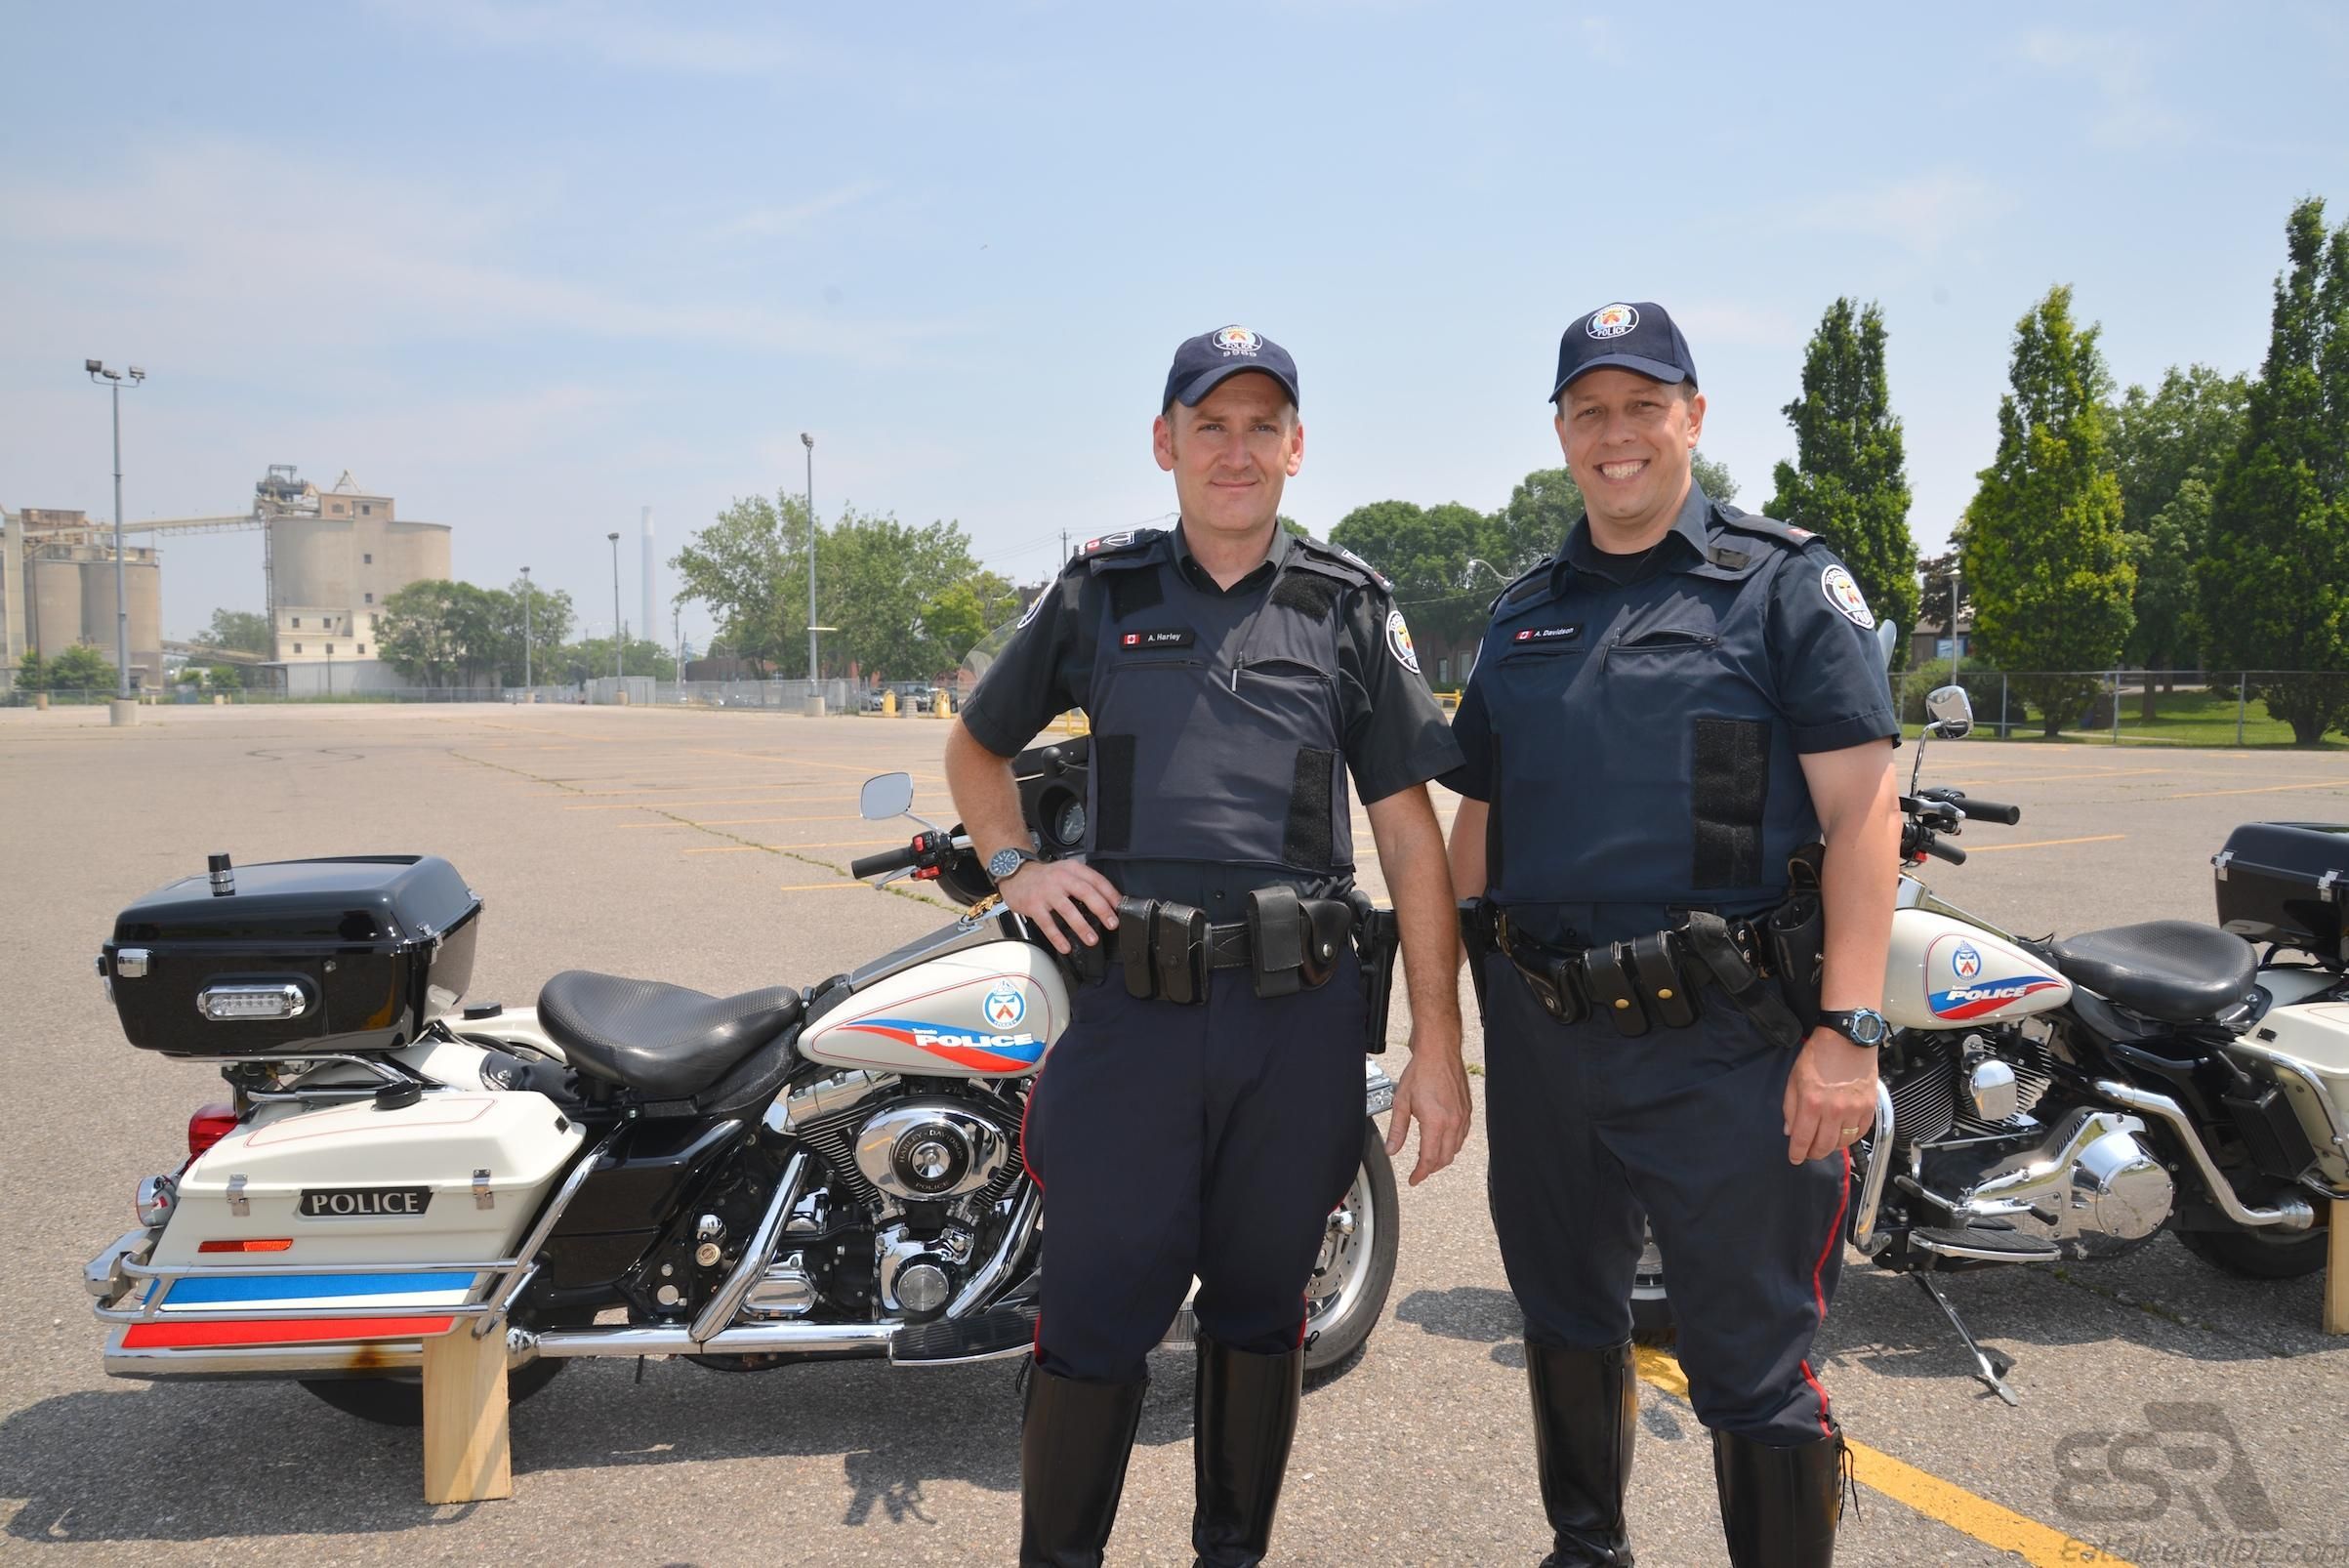 Officer Harley and Officer Davidson